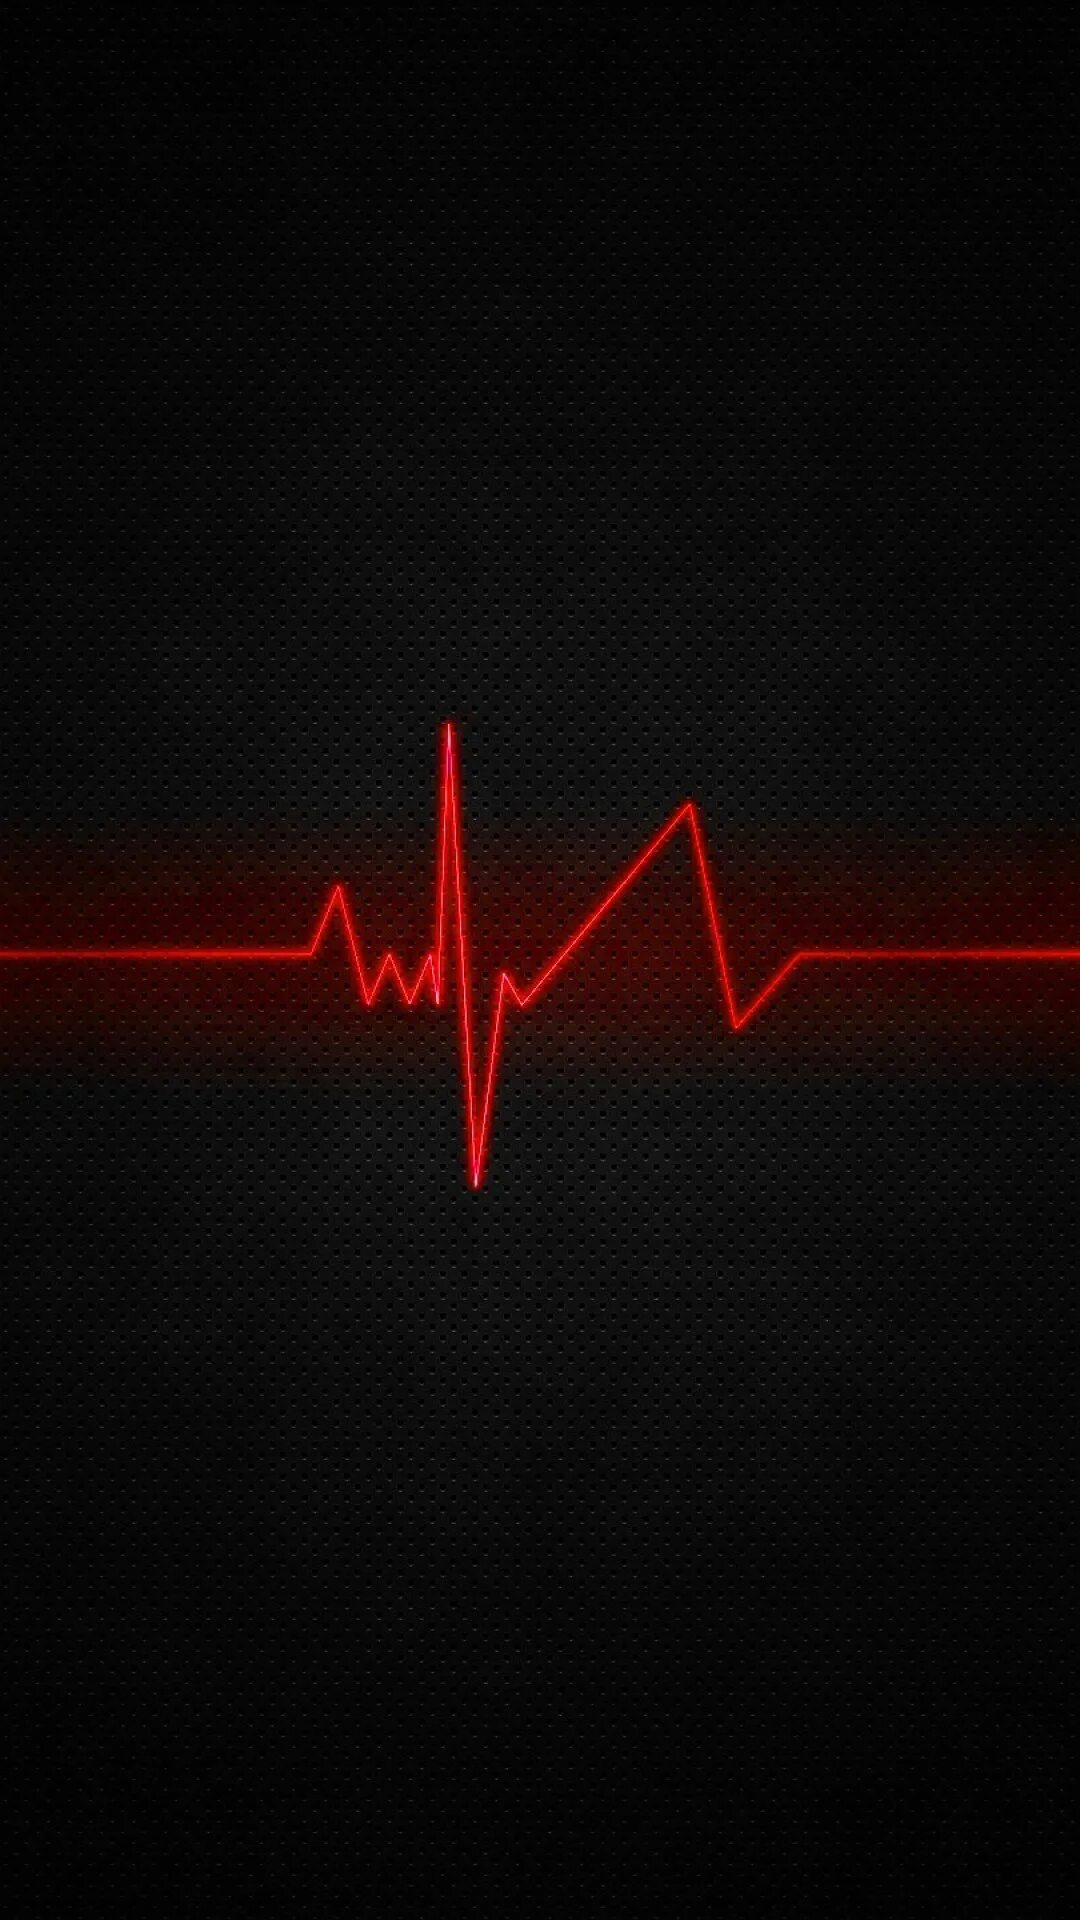 Сердцебиения 23. Пульс. Ритм сердца на черном фоне. Обои на телефон пульс. Кардиограмма сердца.